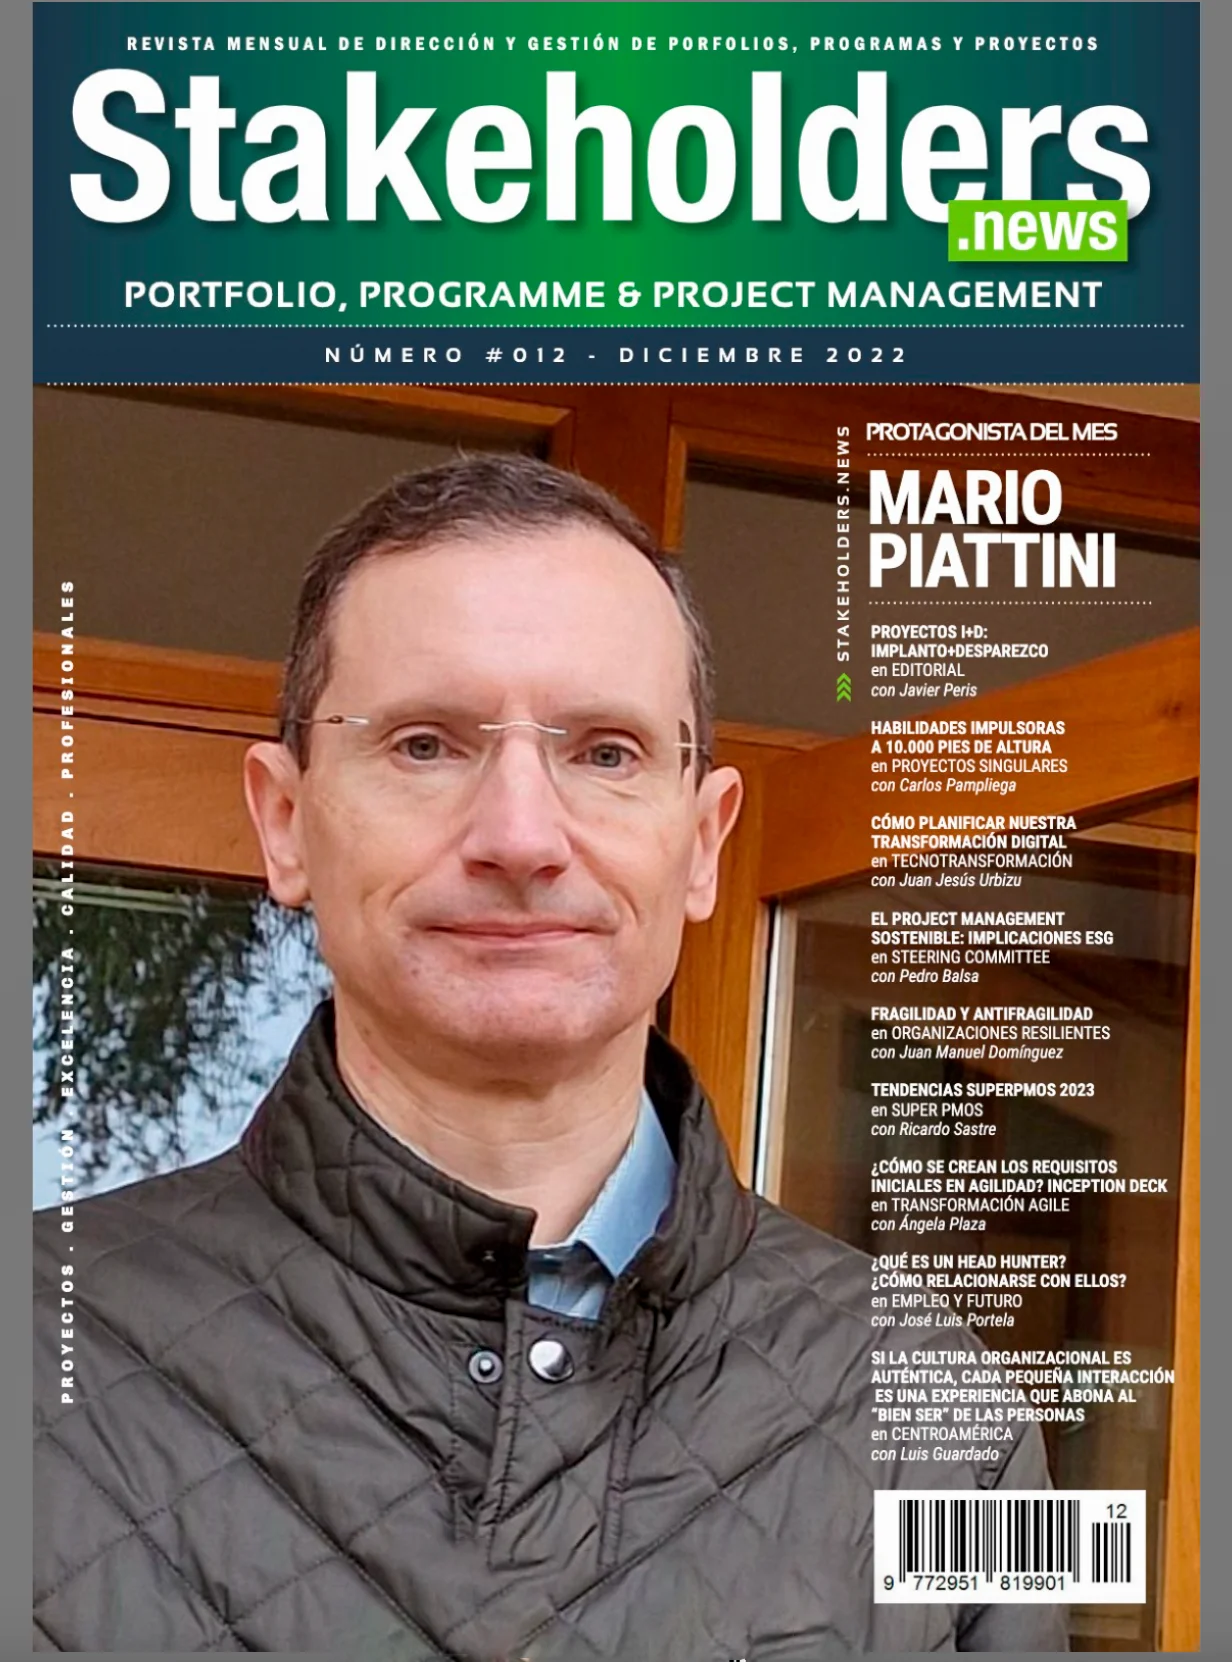 Mario Piattini portada de la revista Stakeholders.news